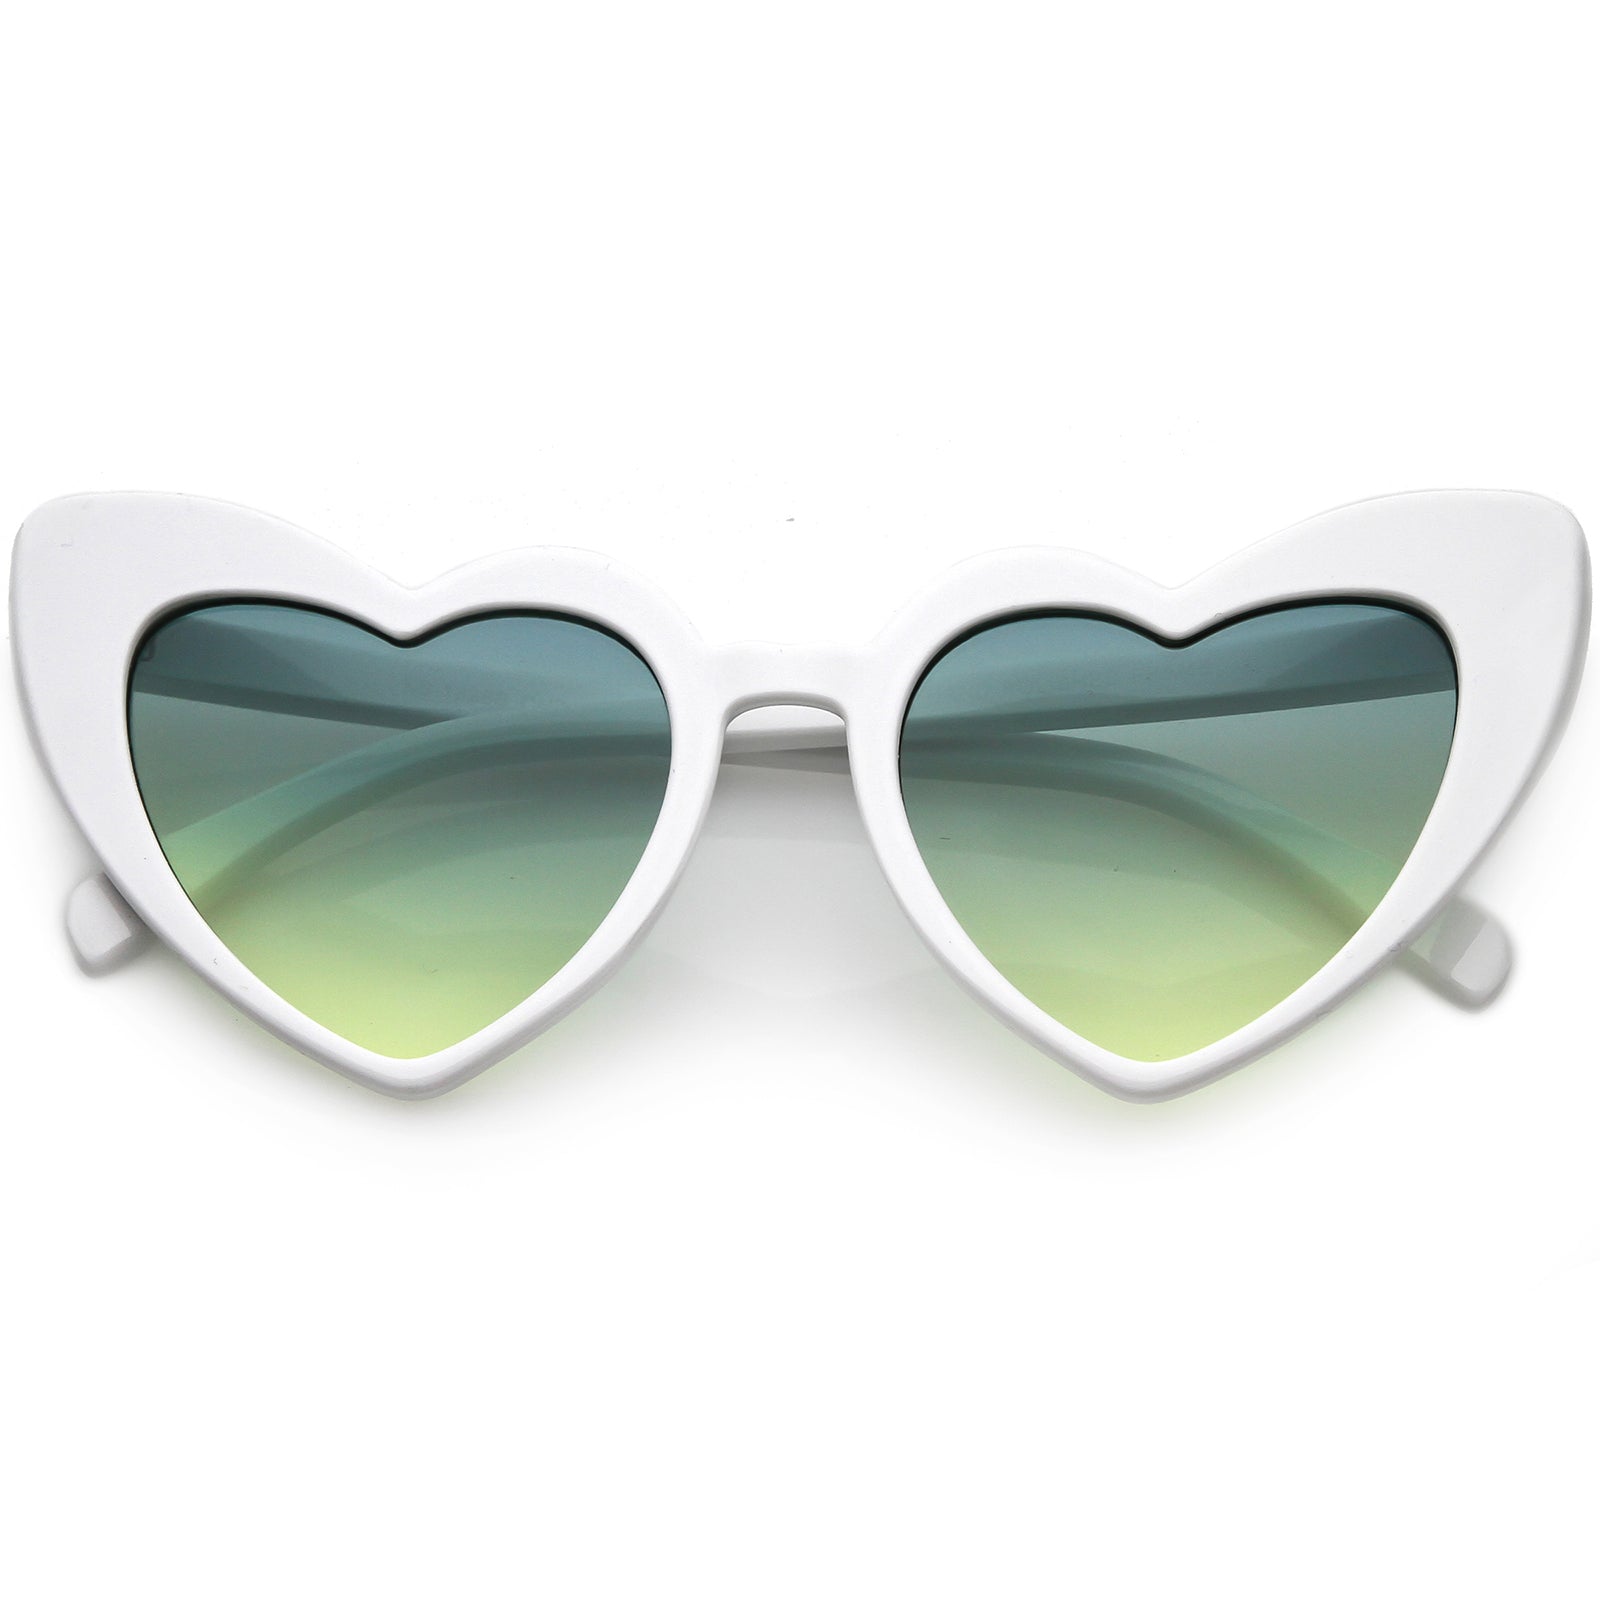 Silver Heart Shaped Prescription Glasses Heart Shape RX Eyeglasses Women  Heart Eye Glasses Prescription Eyewear Frame Lenses 